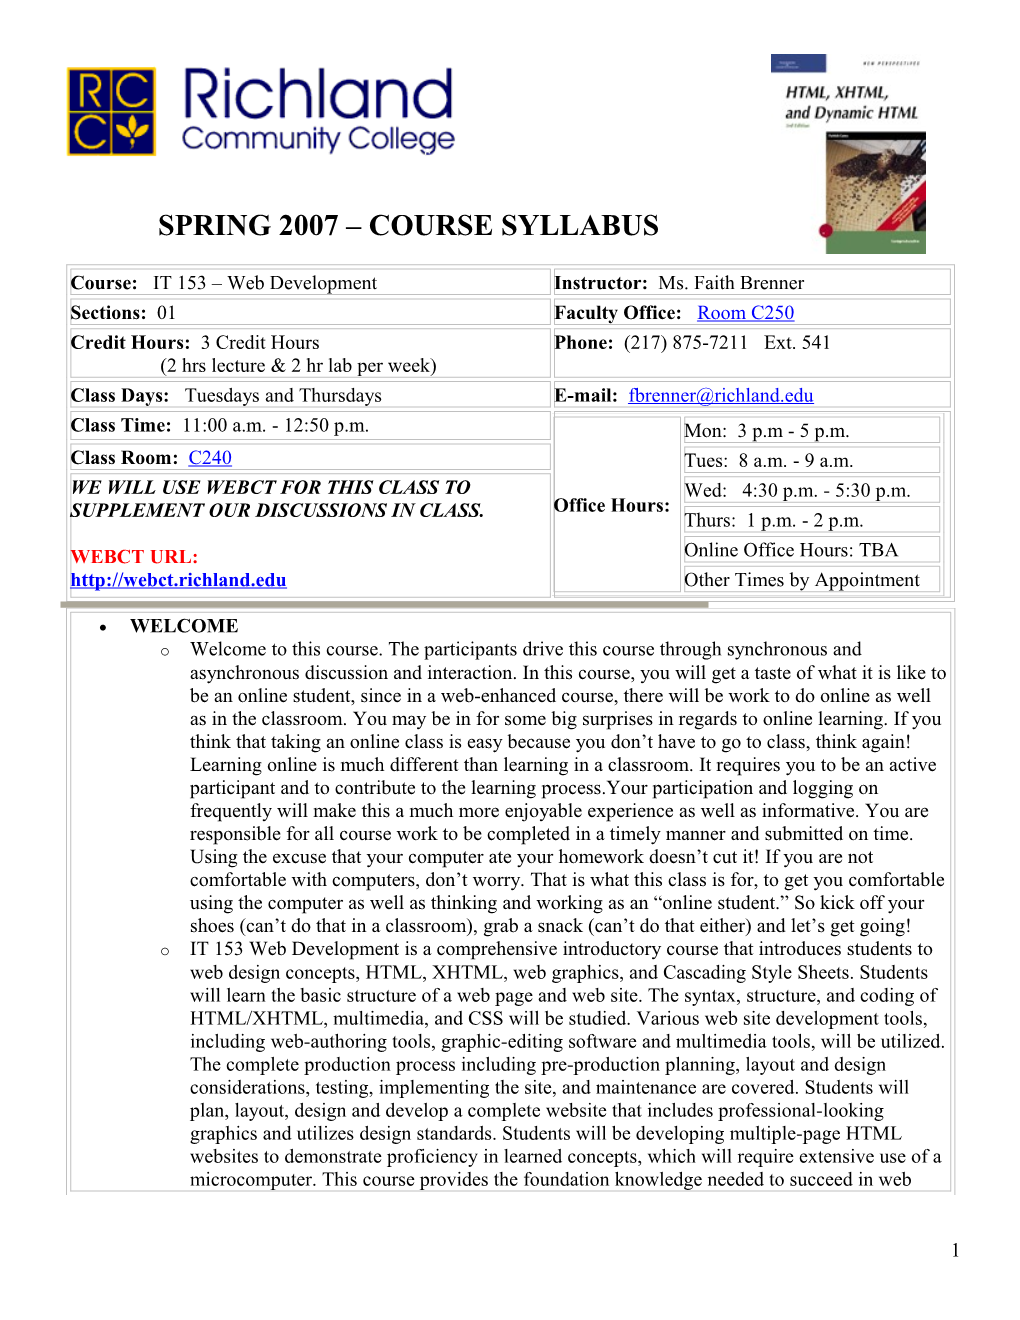 Spring 2007 Course Syllabus